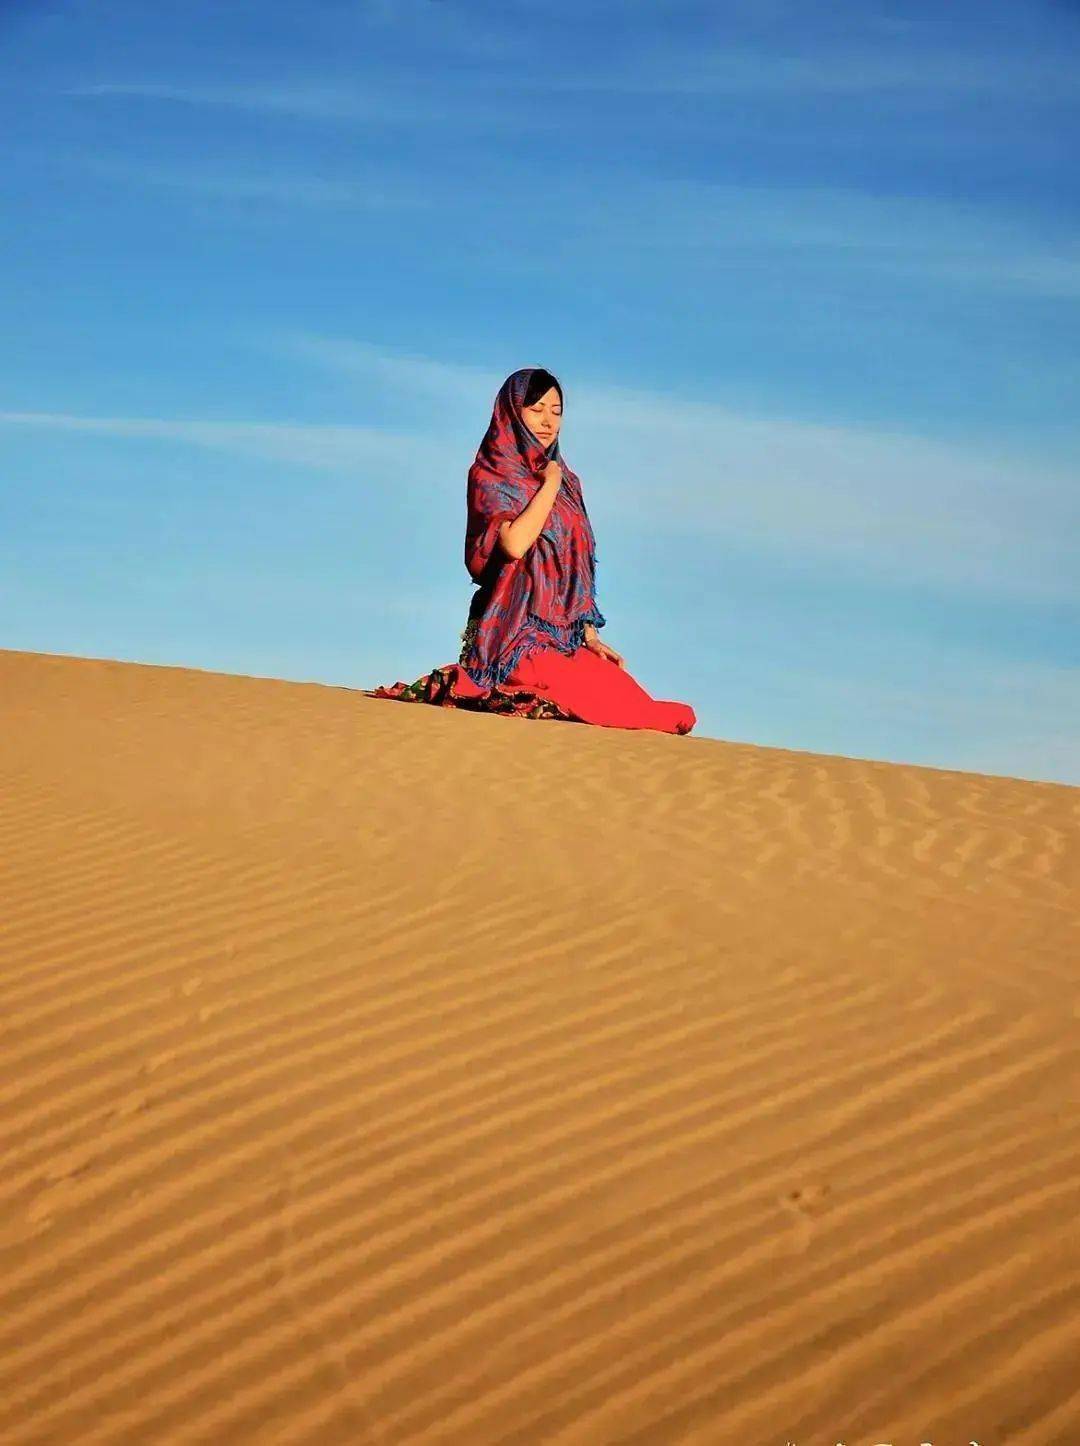 jusino摄影课堂:如何拍出高逼格的沙漠照!_照片